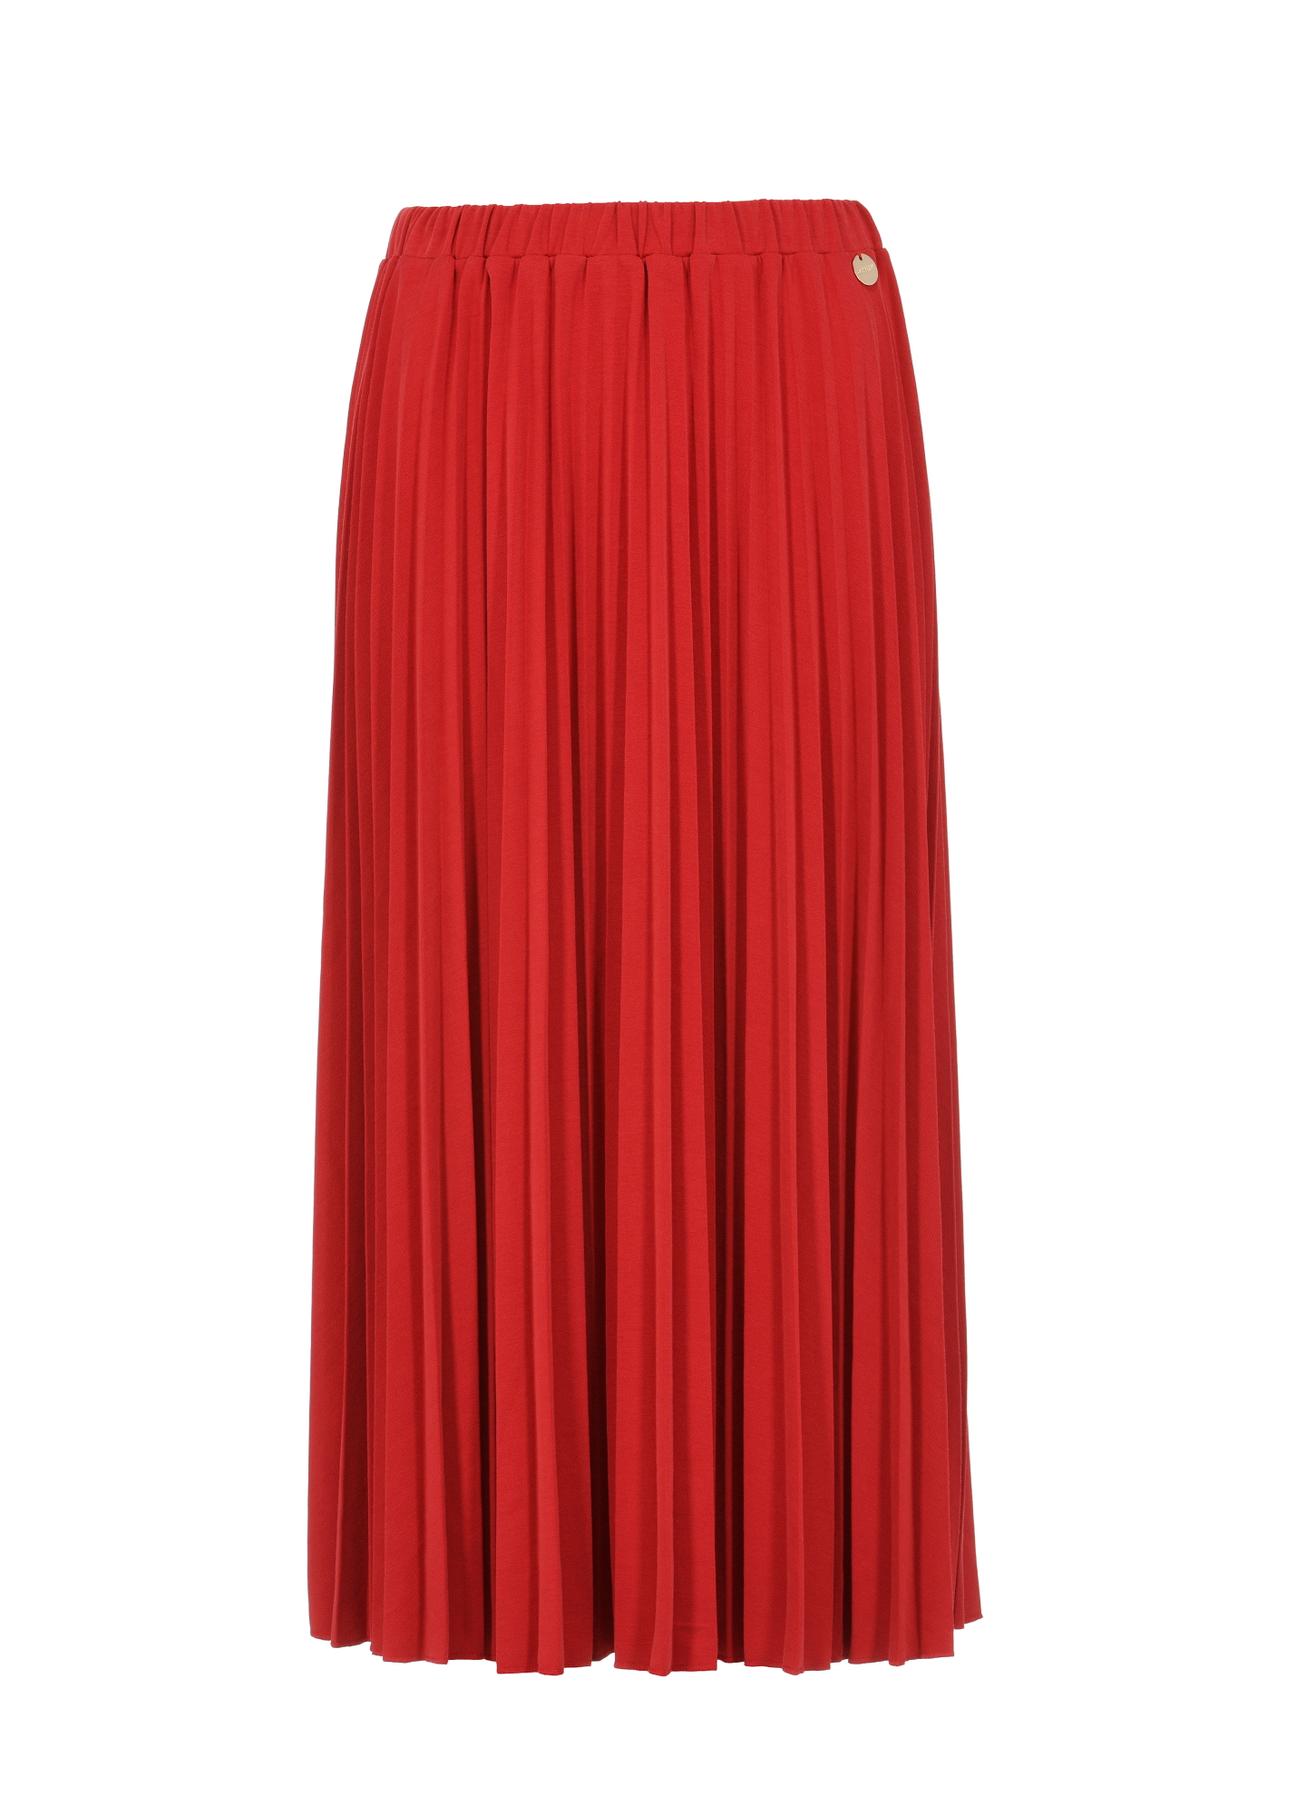 Długa czerwona plisowana spódnica SPCDT-0089-42(W24)